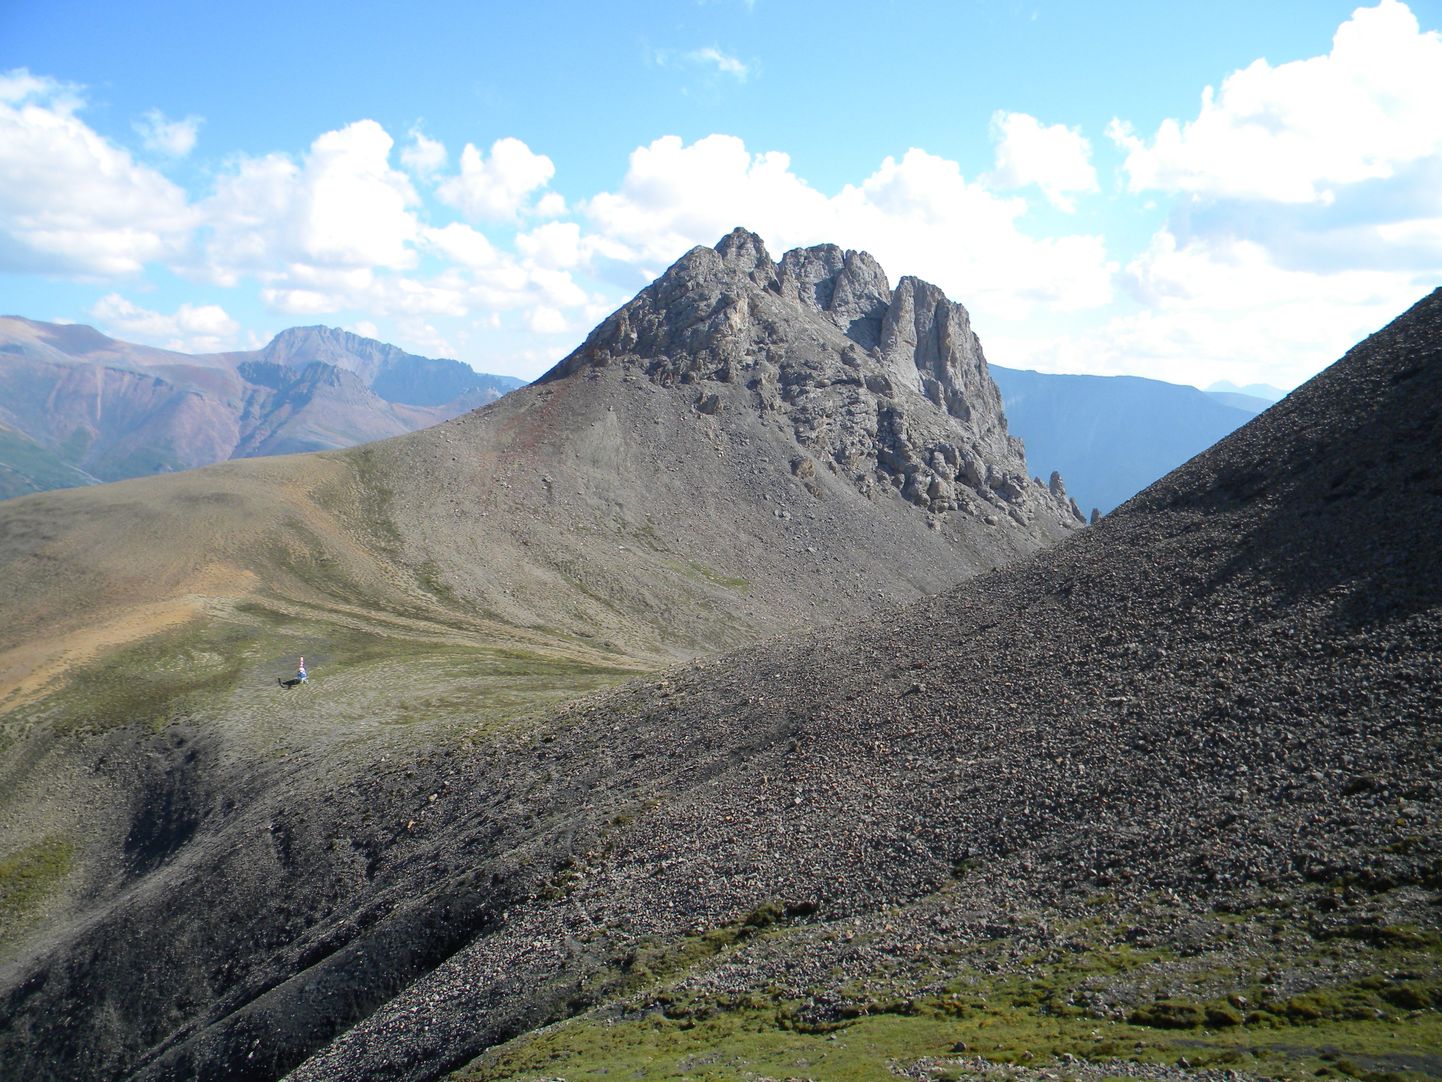 Vaade välitööde paigale Kanada Kaljumägedele, kust teadlased väidetavad vanimad käsnade fossiilid leidsid.